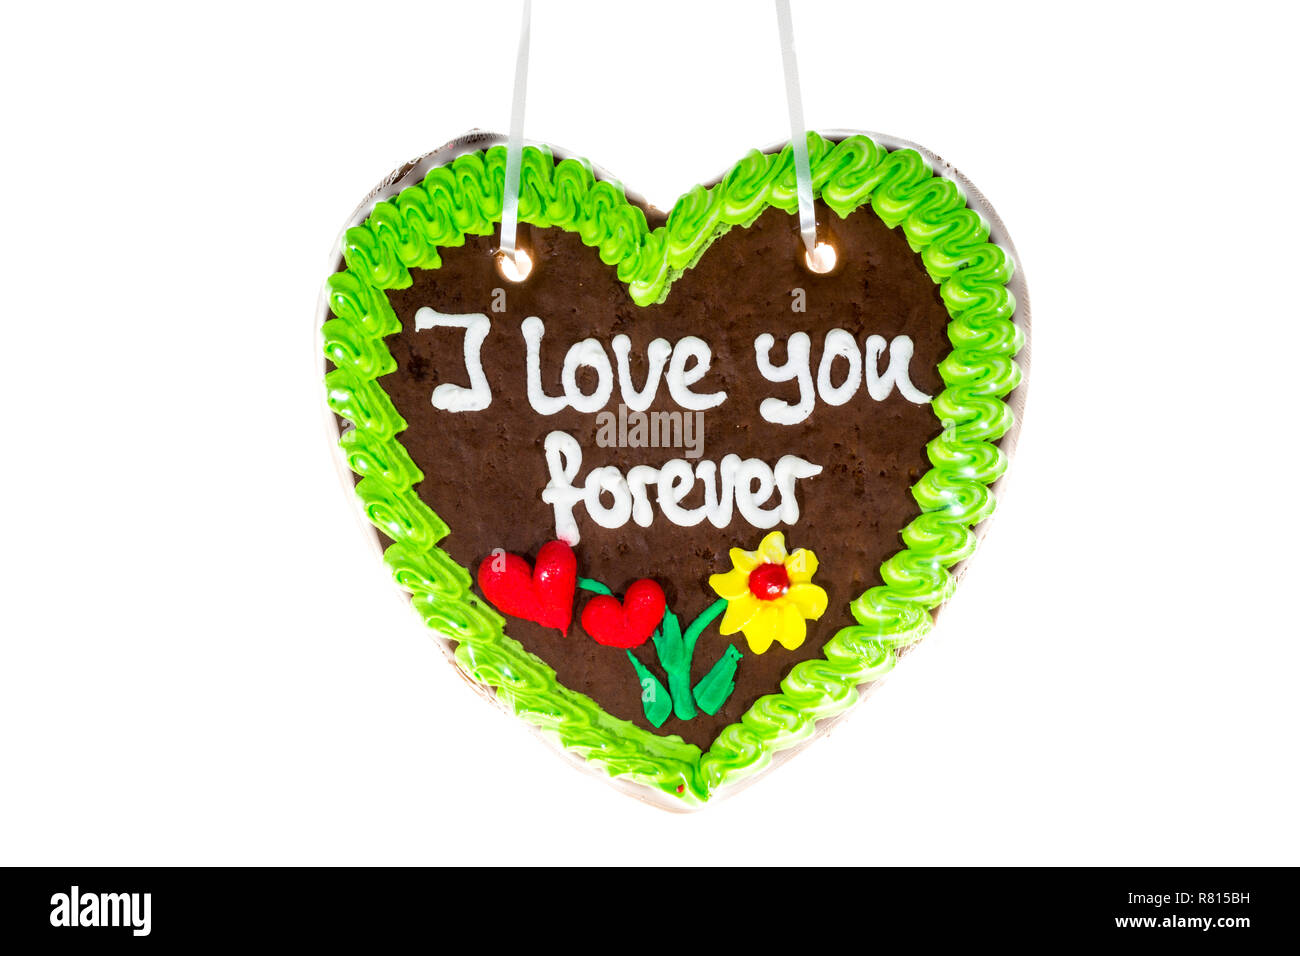 Coeur d'épices avec l'inscription "I love you forever' Banque D'Images